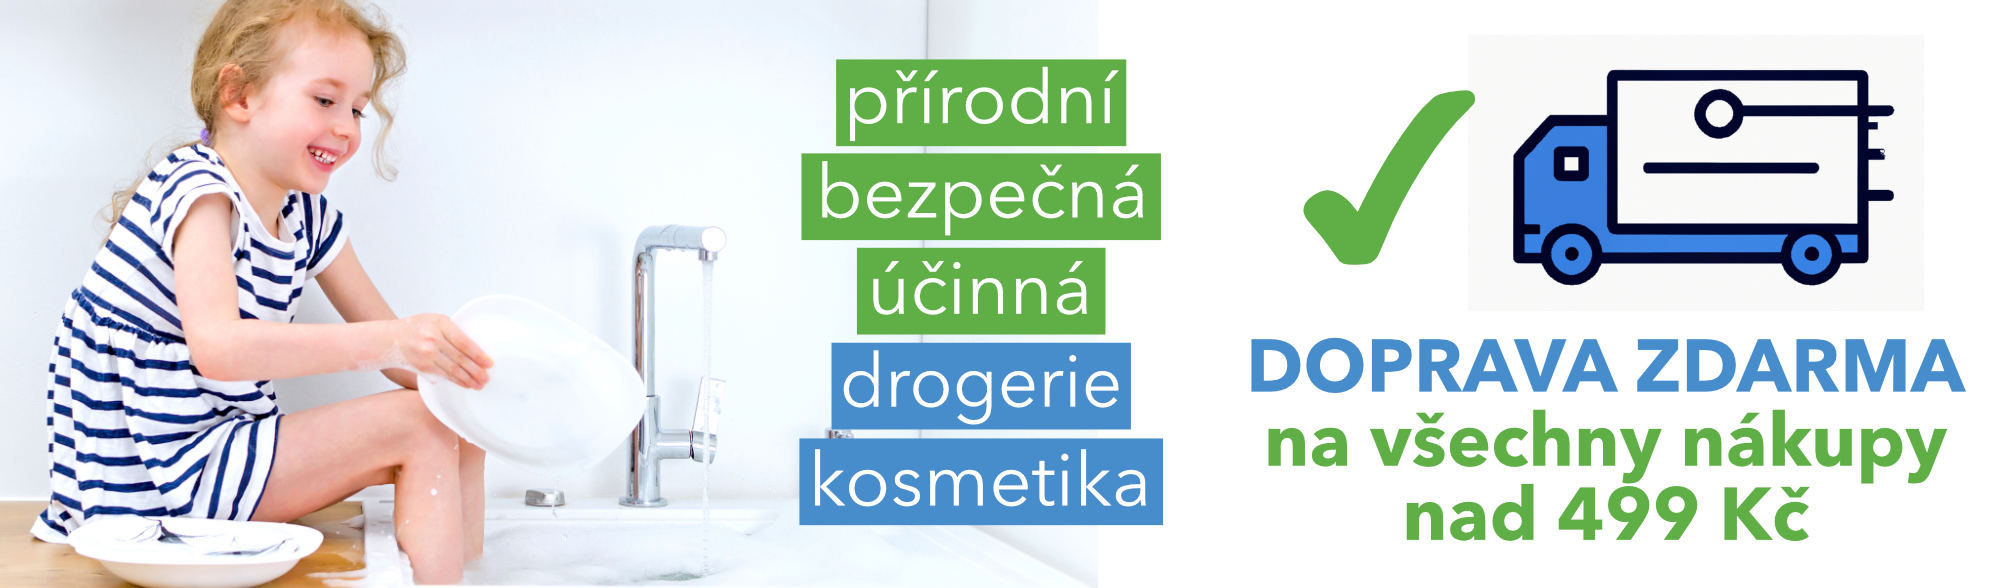 Doprava zdarma od 499 Kč - BioDrogerie.cz